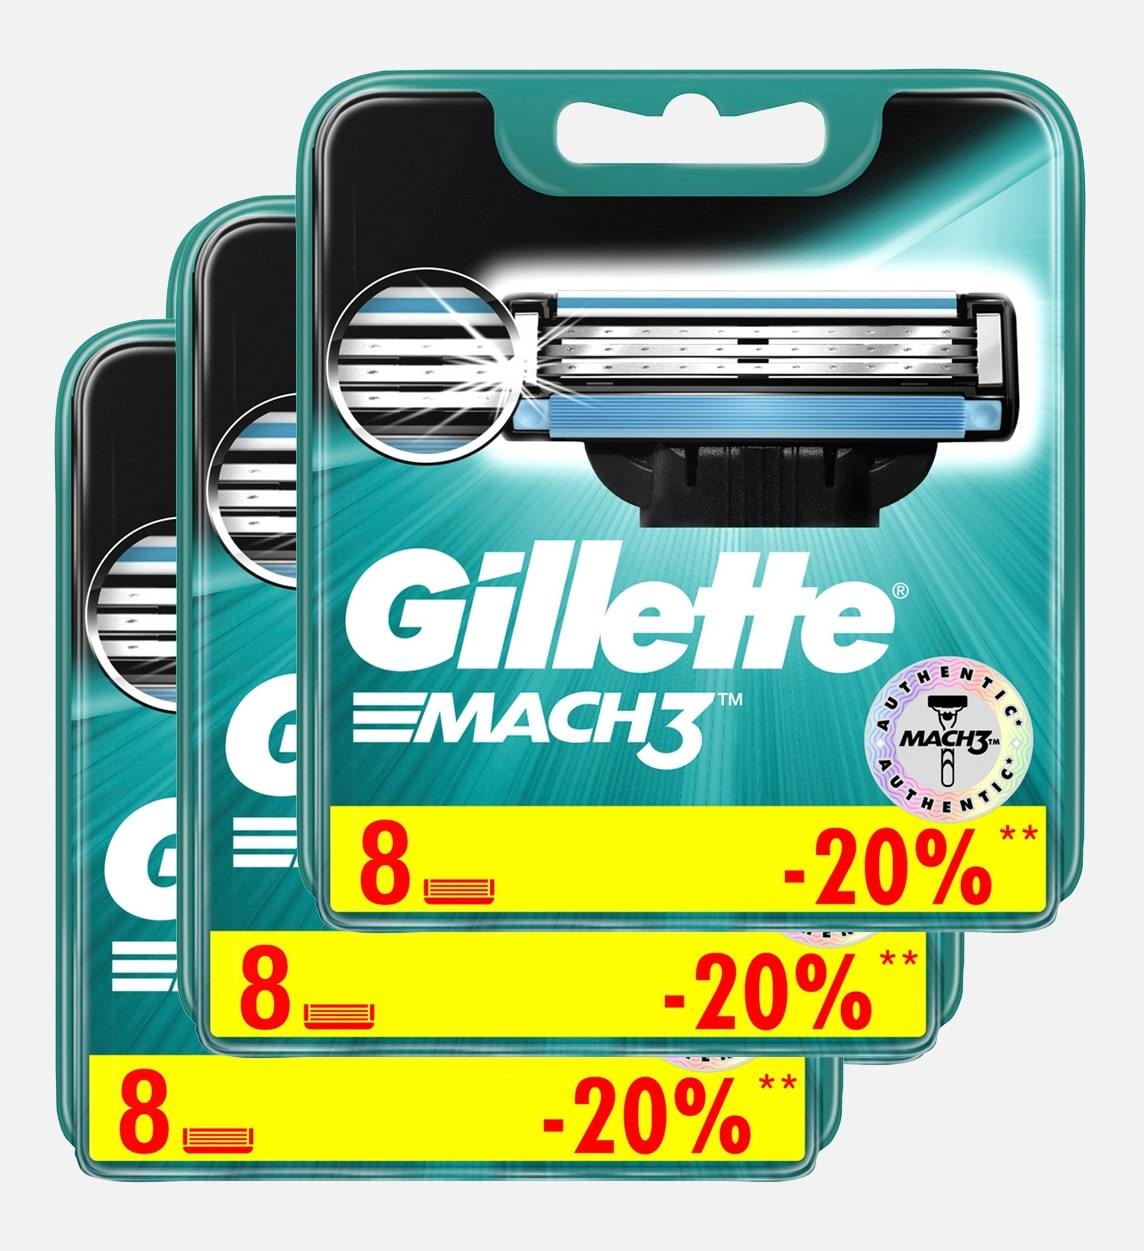 Сменные кассеты для бритья Gillette MACH3 комплект 3 по 8 (24 шт). Цена с учетом скидки 6%.